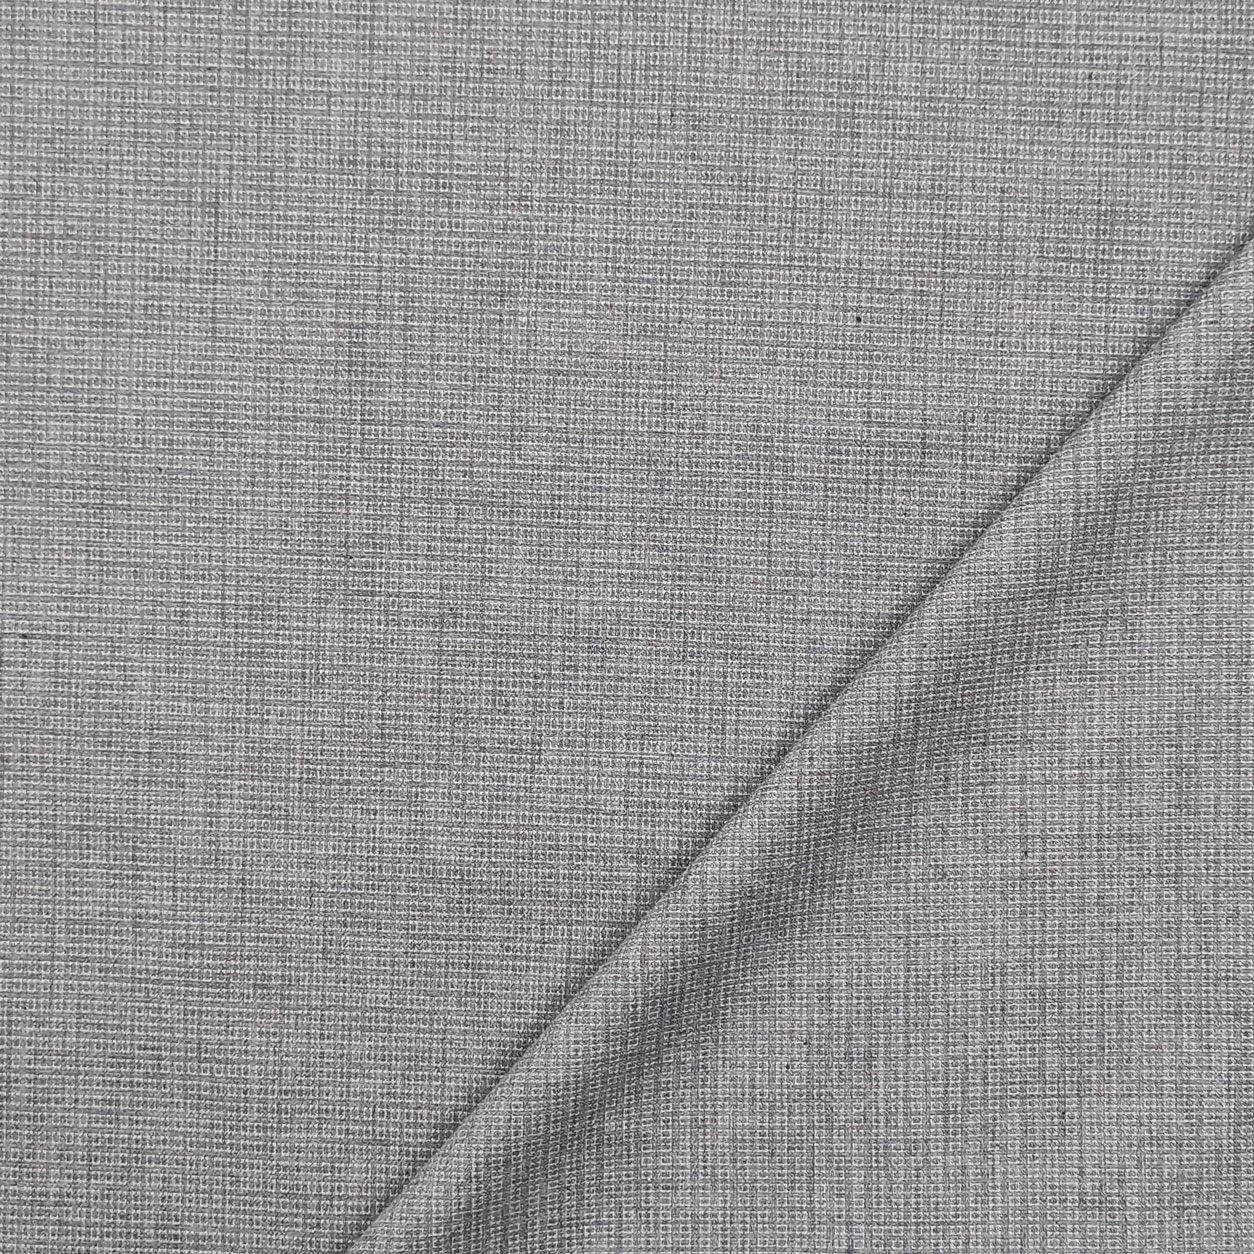 tessuto-per-camicia-microfantasia-grigio-chiaro